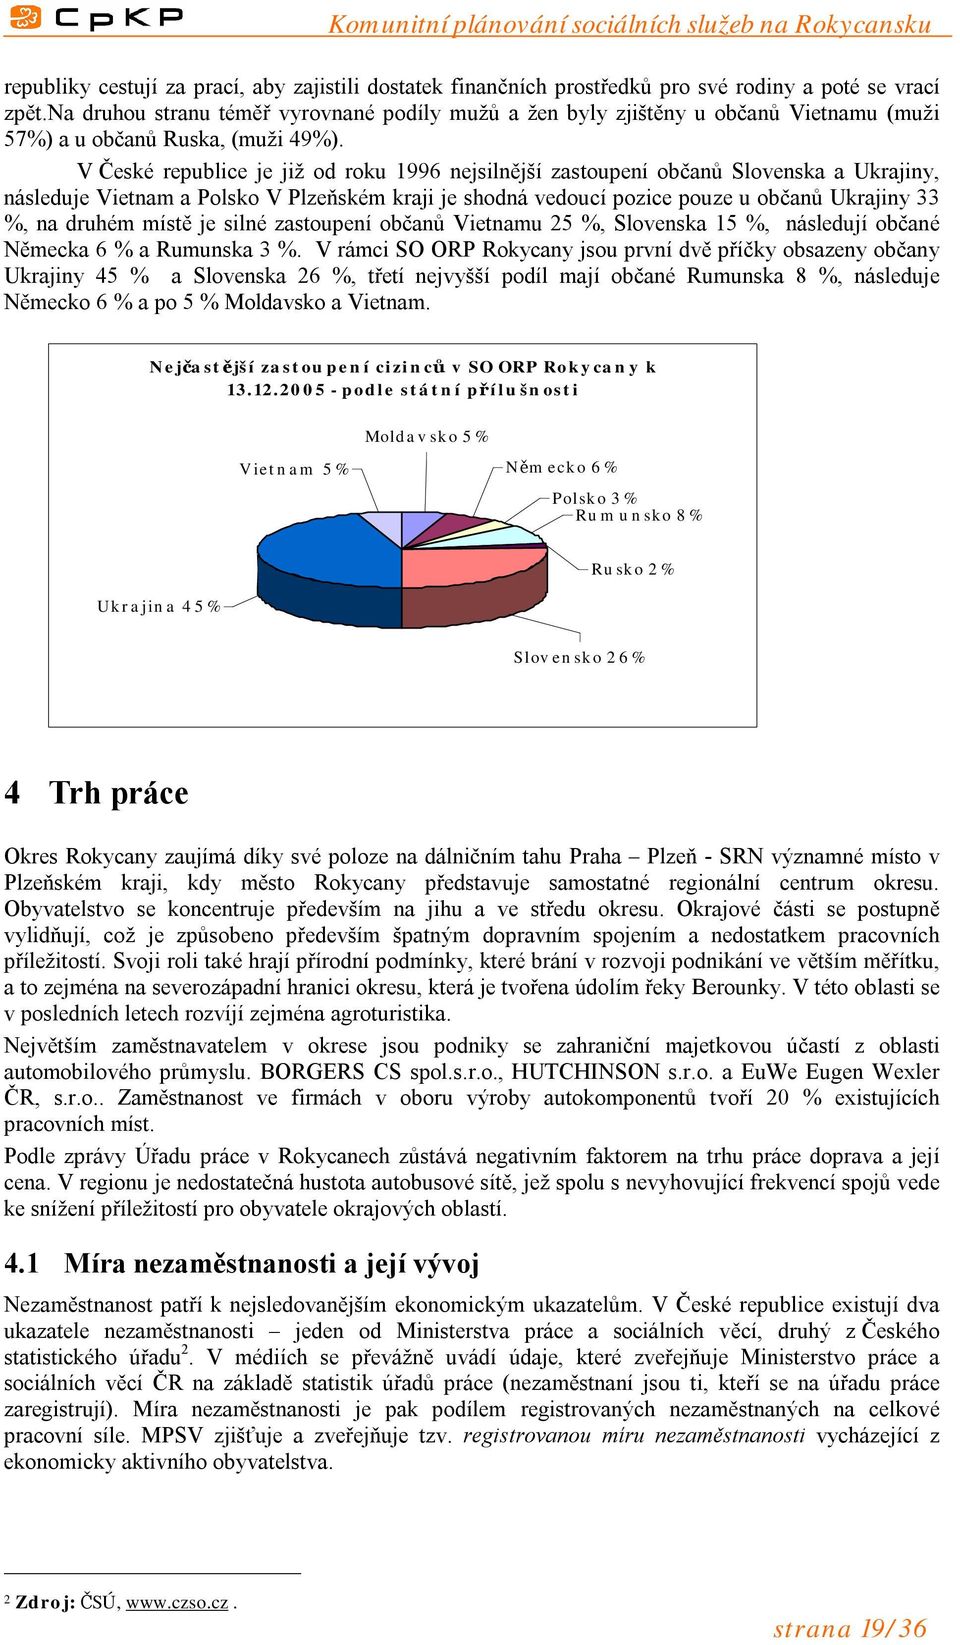 V České republice je již od roku 1996 nejsilnější zastoupení občanů Slovenska a Ukrajiny, následuje Vietnam a Polsko V Plzeňském kraji je shodná vedoucí pozice pouze u občanů Ukrajiny 33 %, na druhém